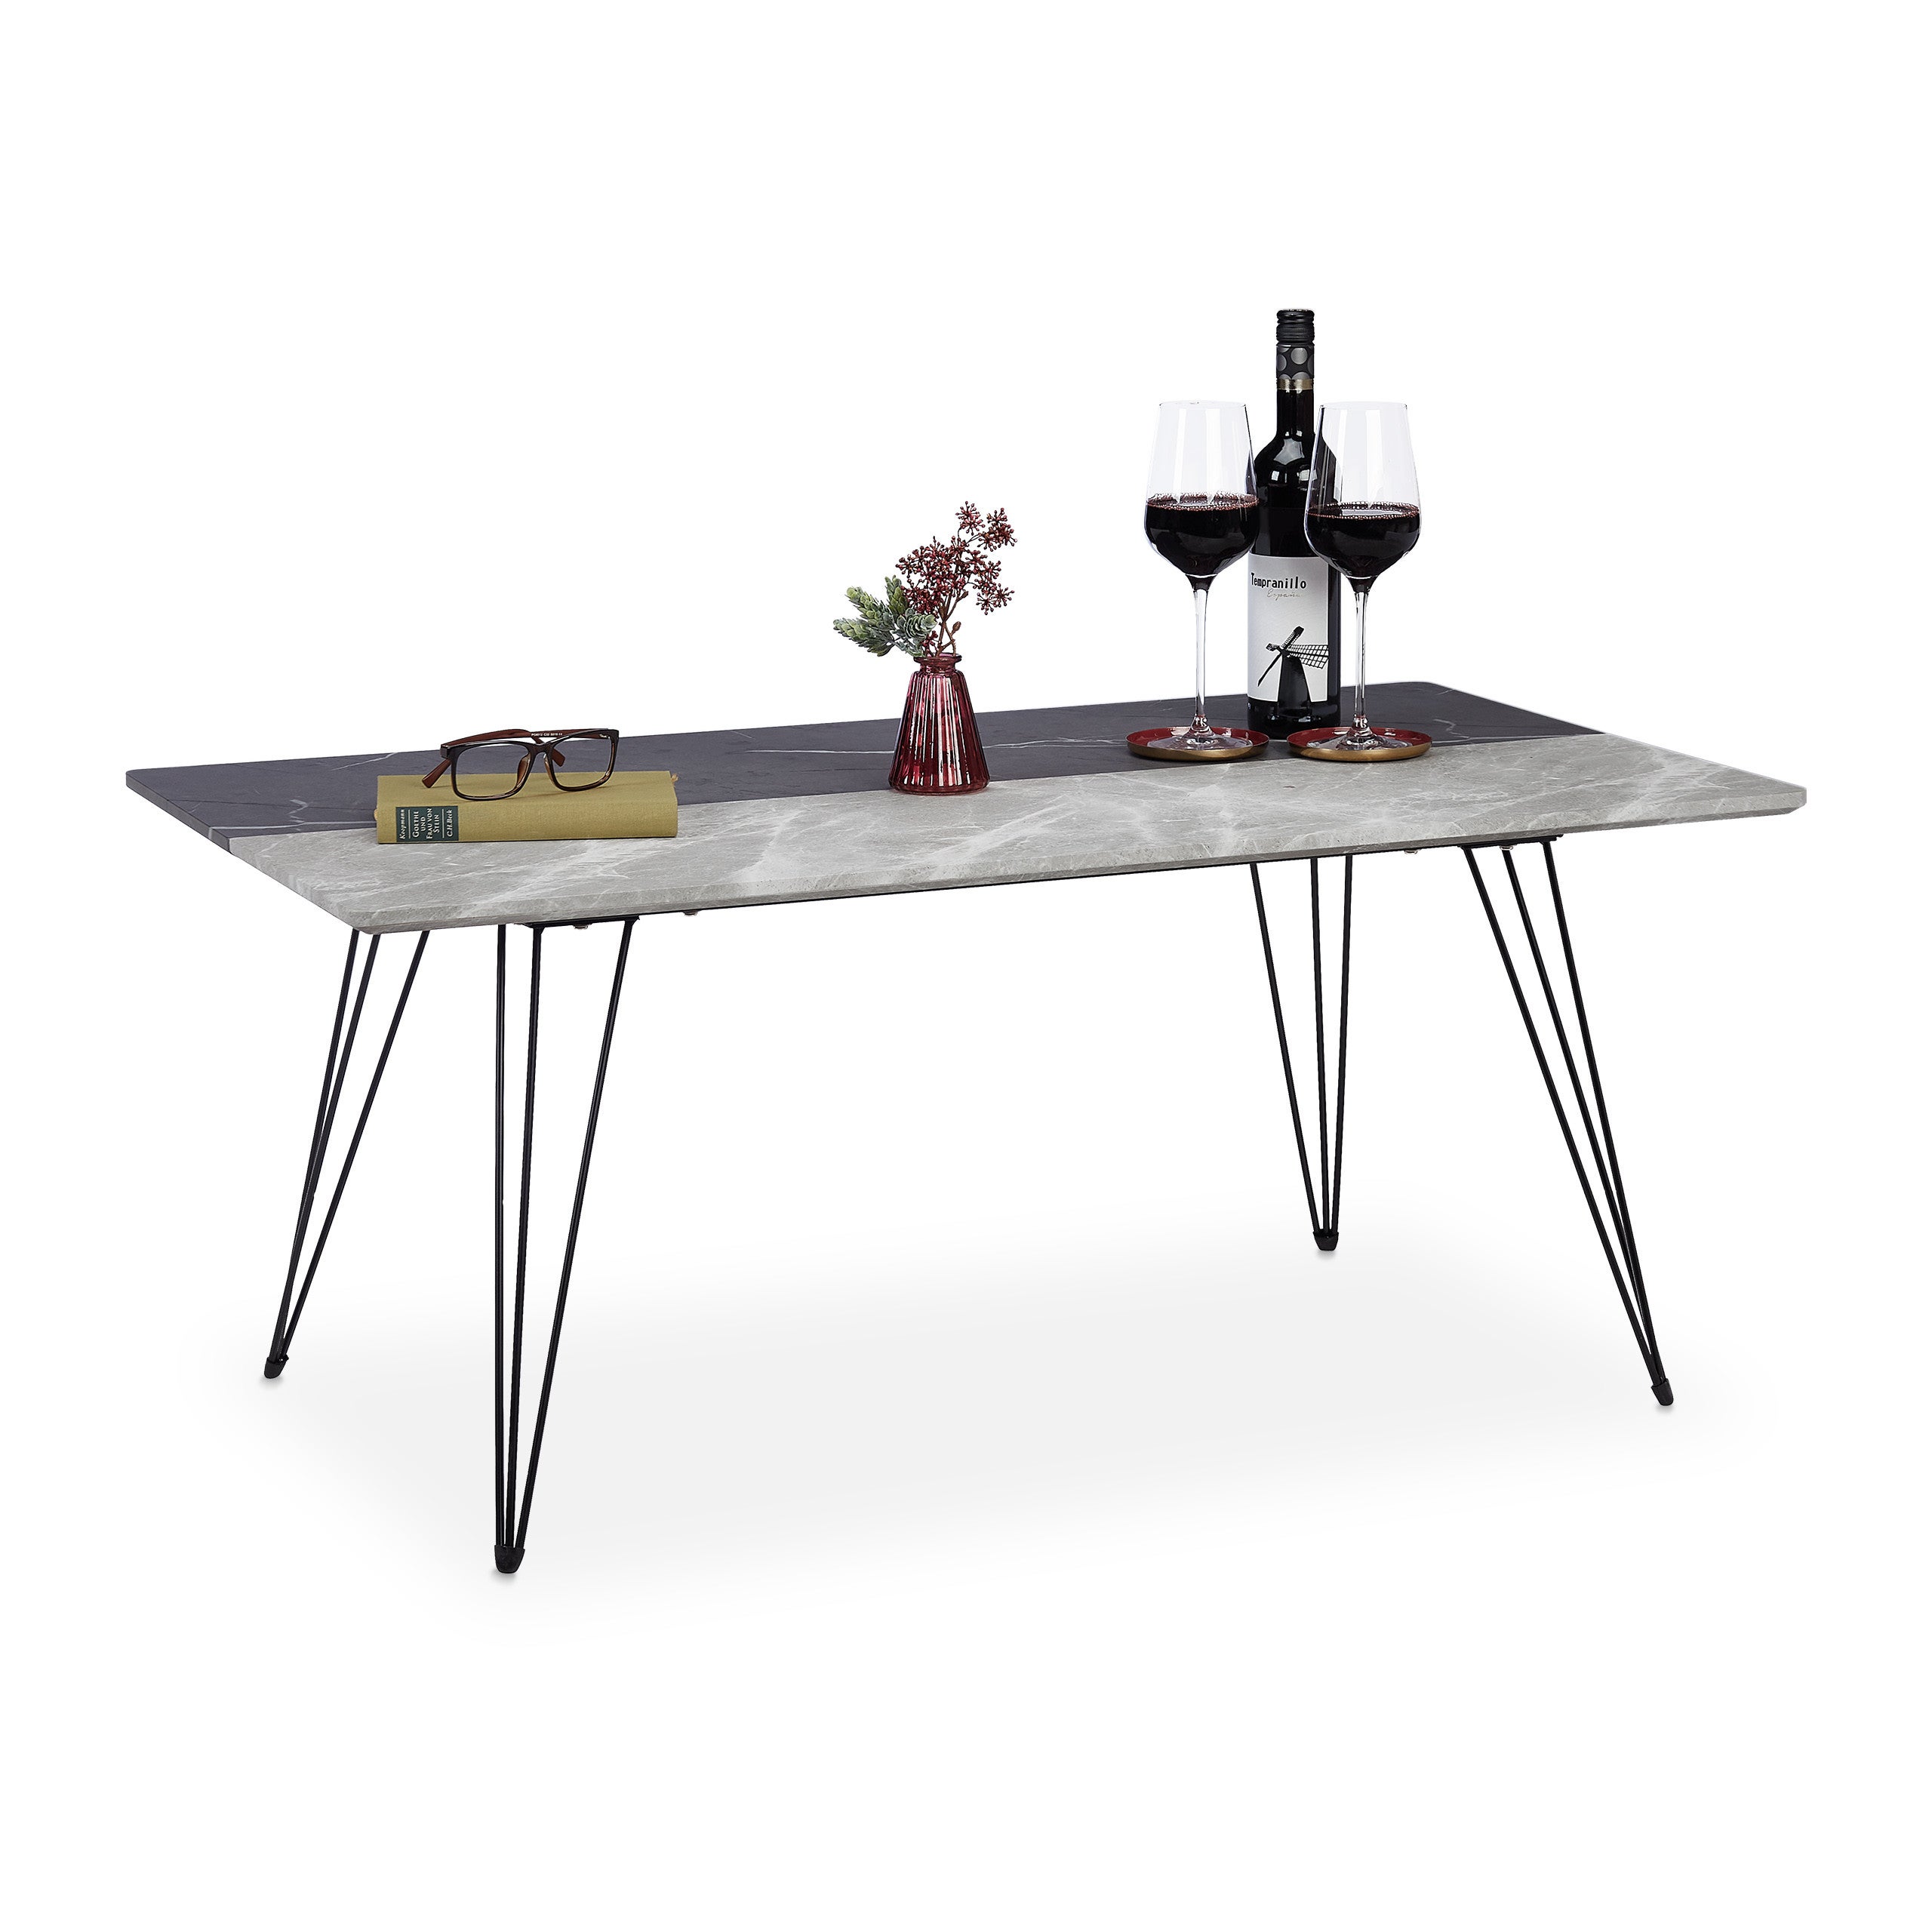 Relaxdays Table basse en aspect marbre, design bicolore, meuble d’appoint, pieds en métal, HLP 47x110x60,5 cm, noir/gris | Leroy Merlin